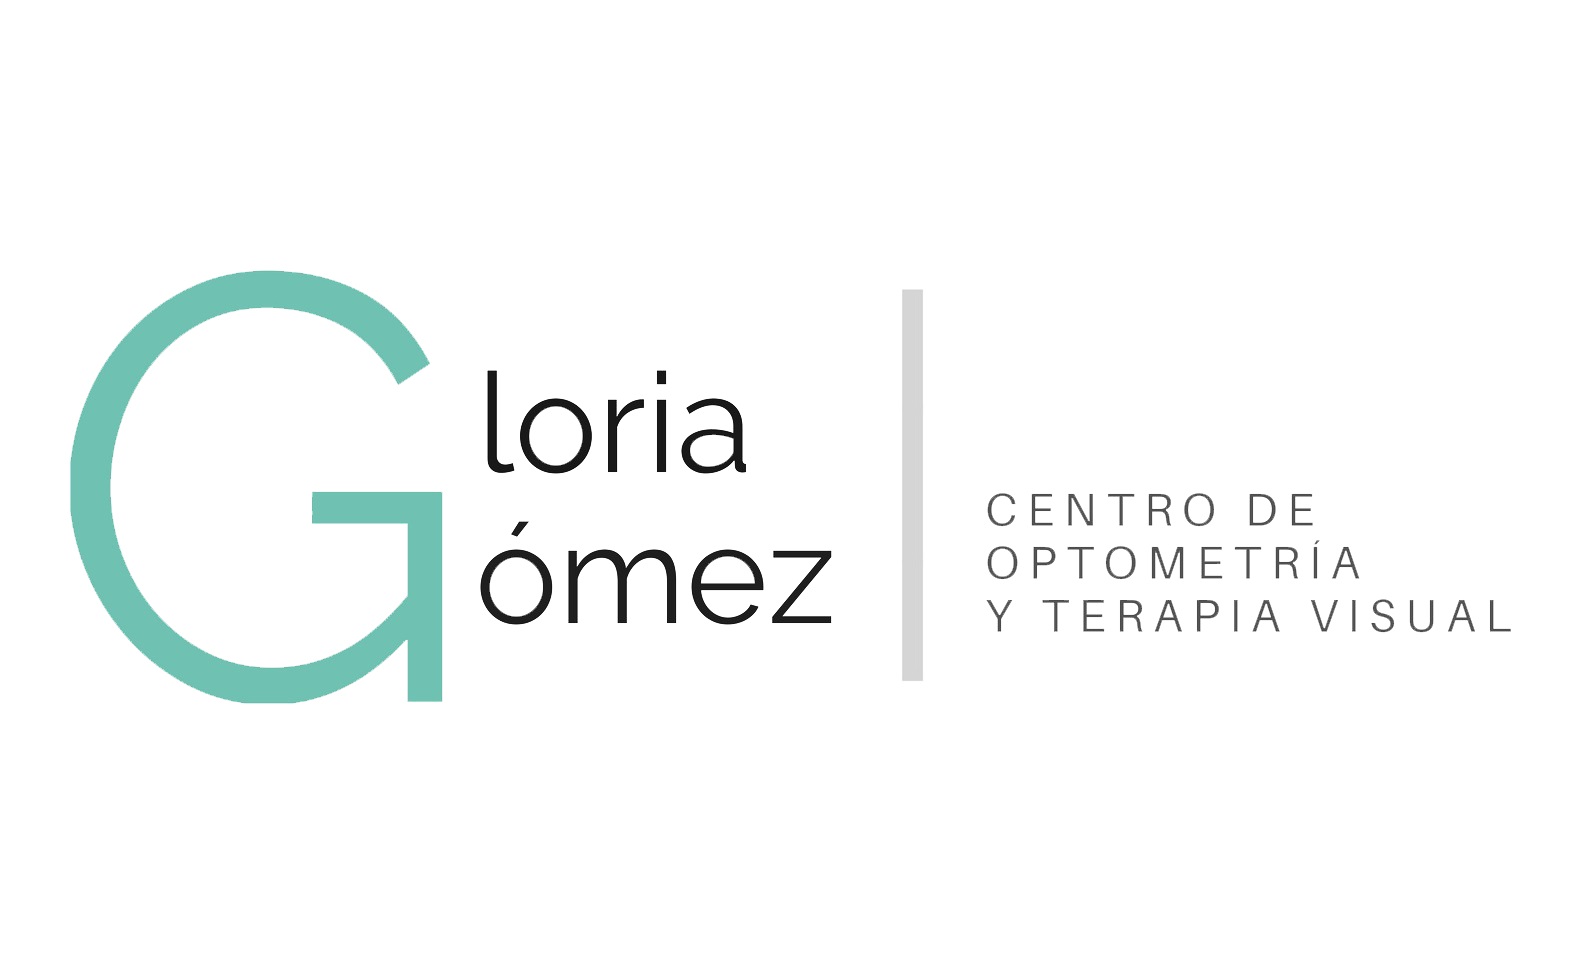 Centro de Optometría y Terapia Visual Gloria Gómez